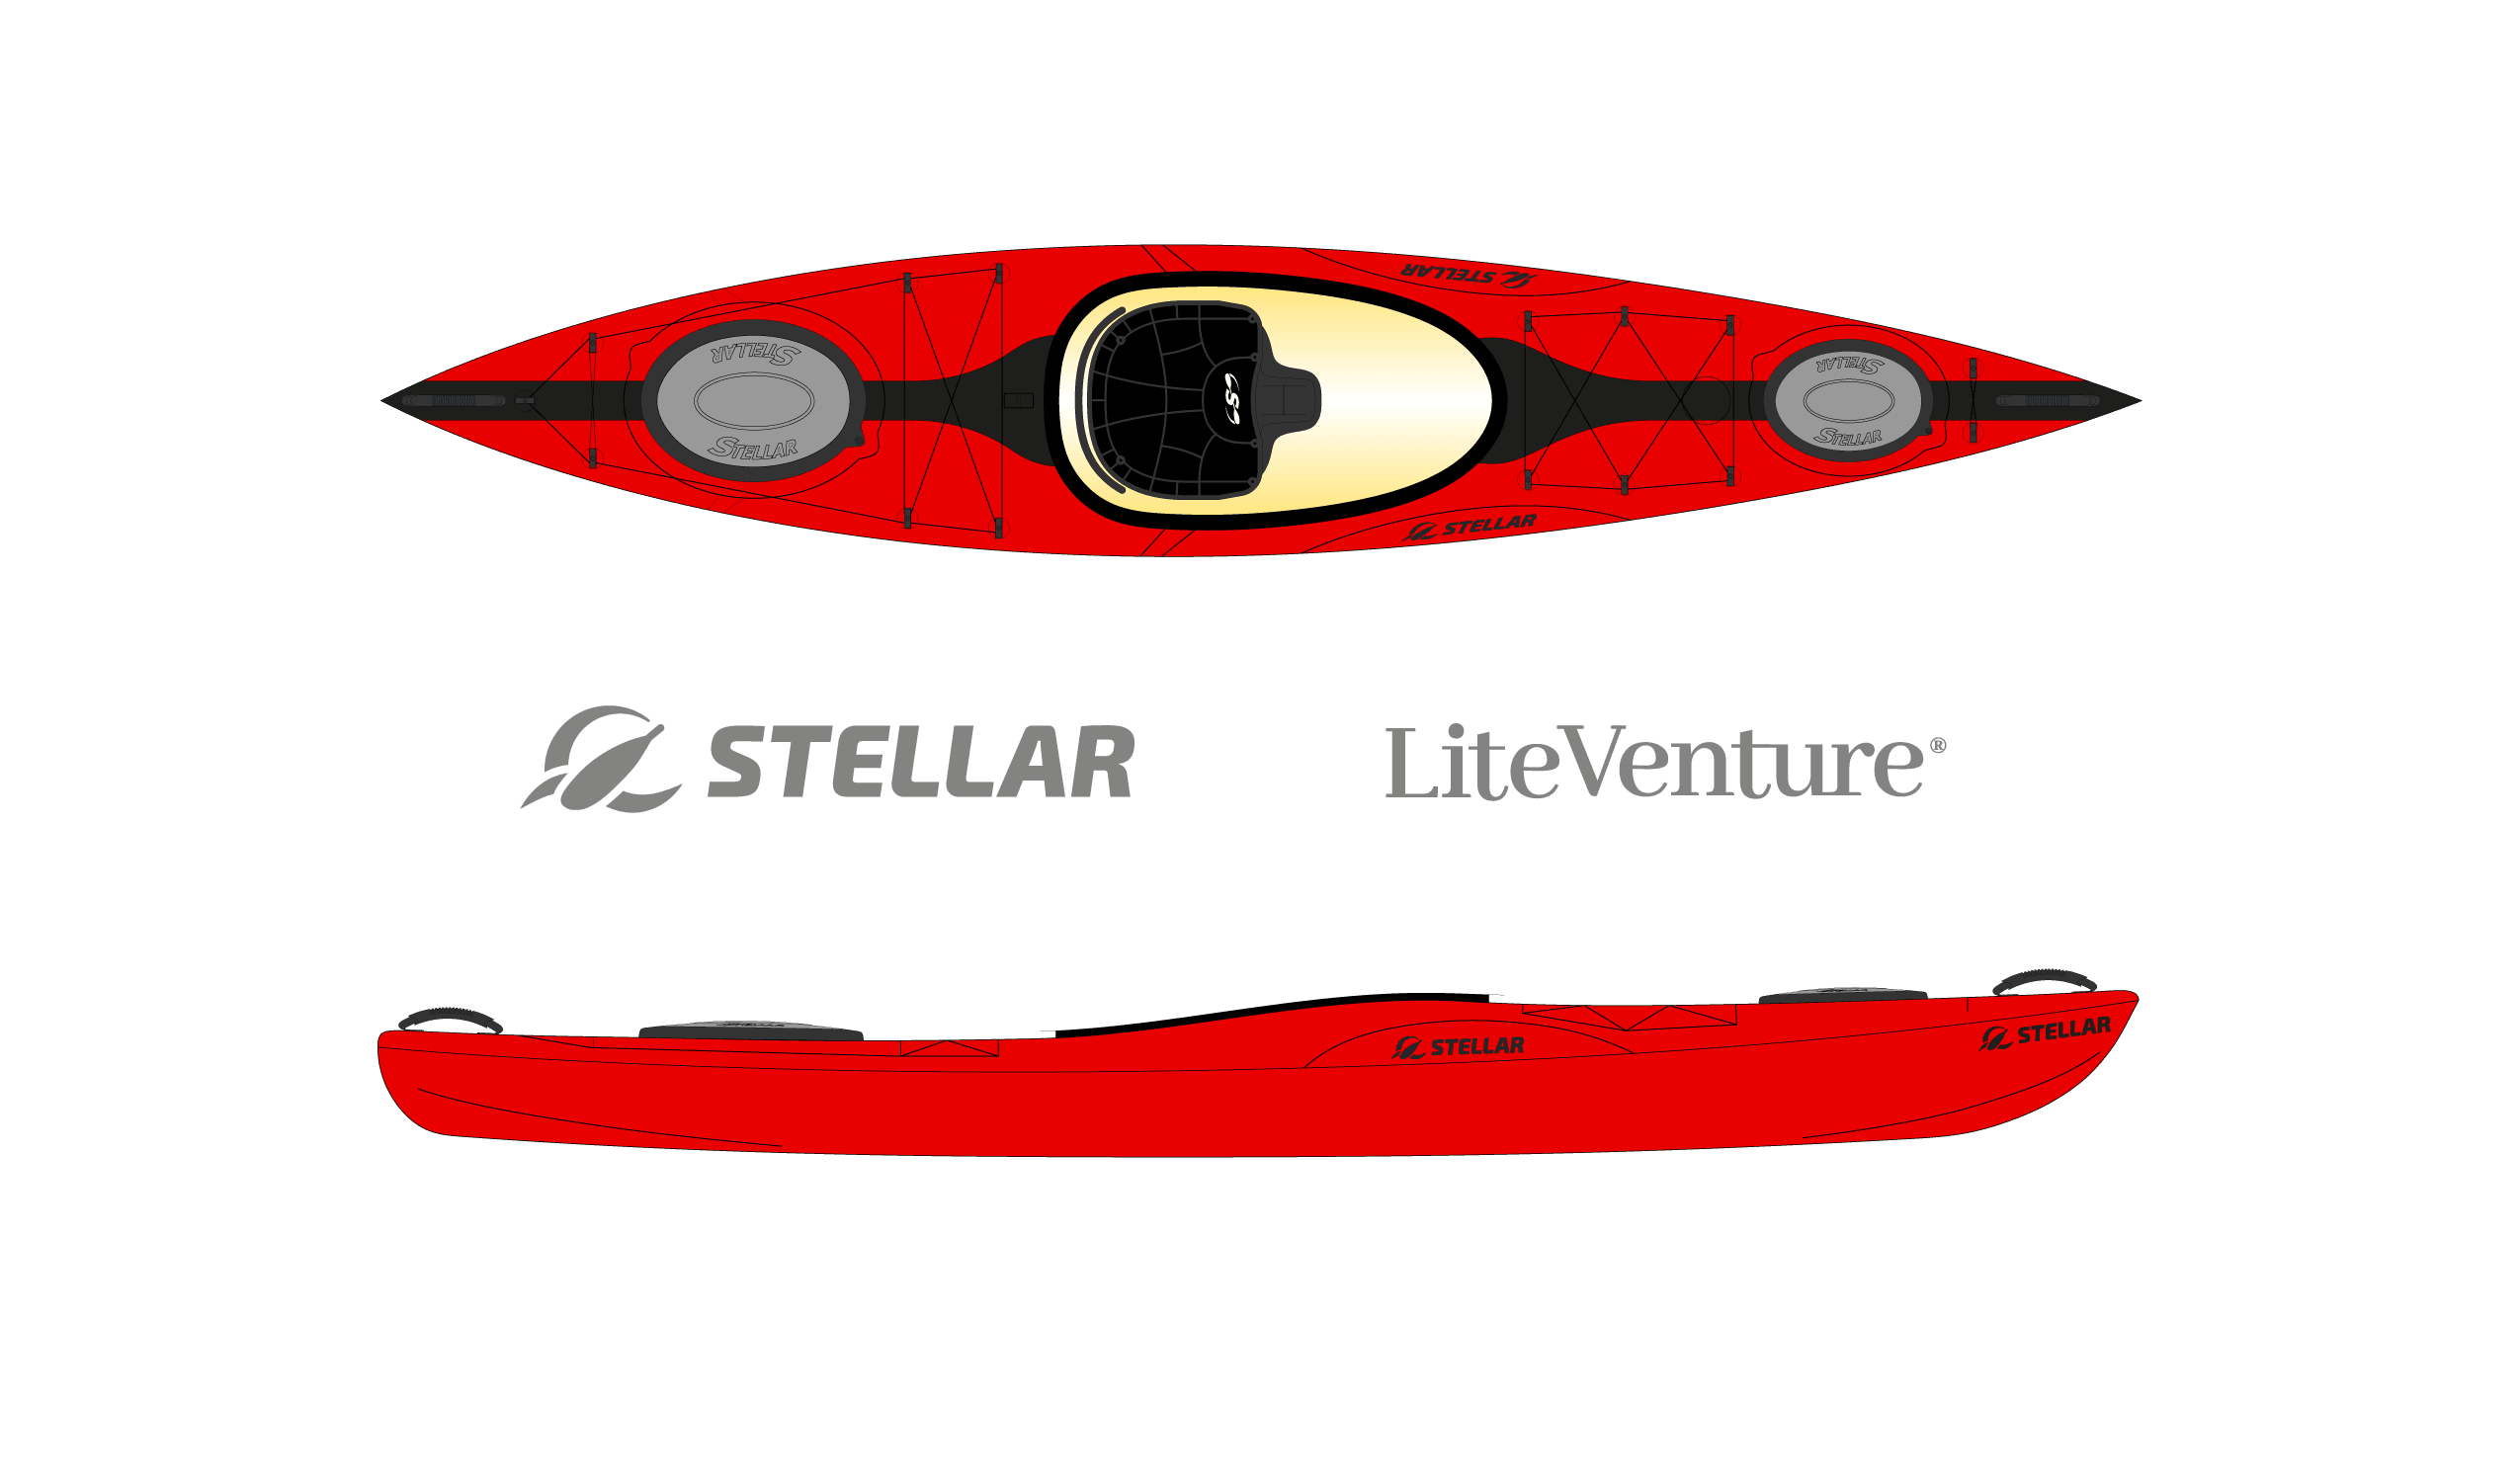 Produktbild von Kajak " S12 Advantage-rot schwarz " der Marke STELLAR Lightweight für 2290.00 €. Erhältlich online bei Lite Venture ( www.liteventure.de )